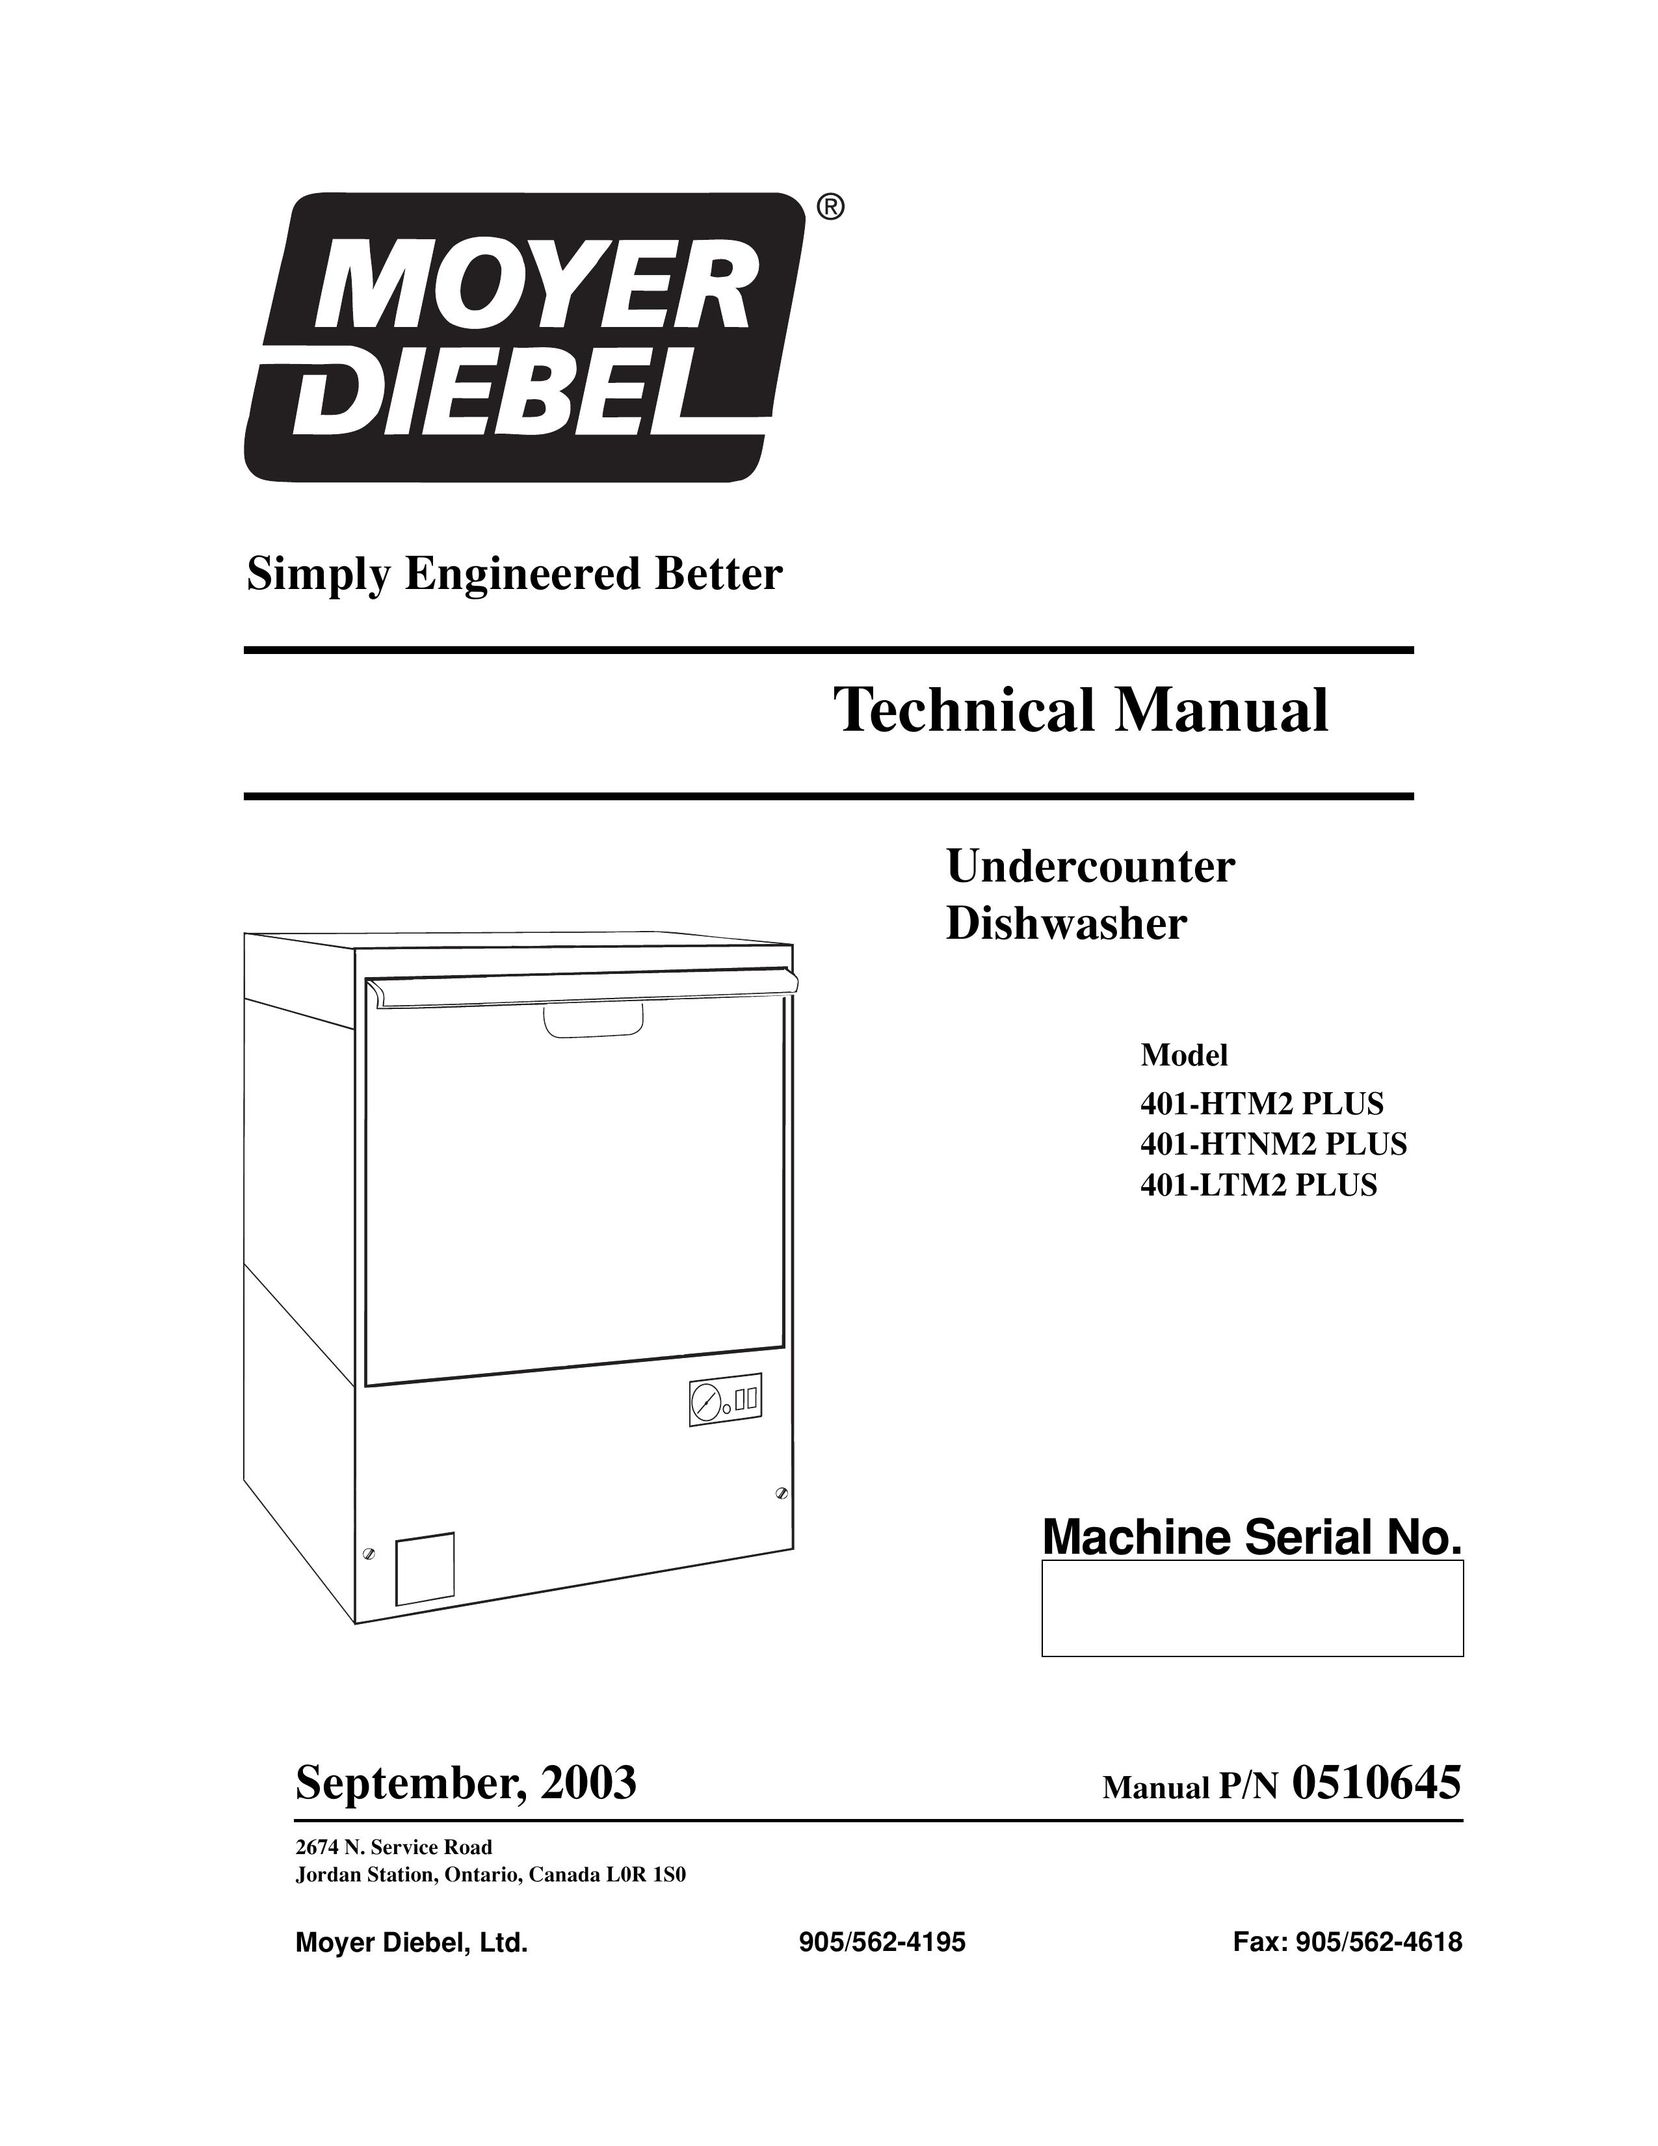 Moyer Diebel 401-HTNM2 PLUS Dishwasher User Manual